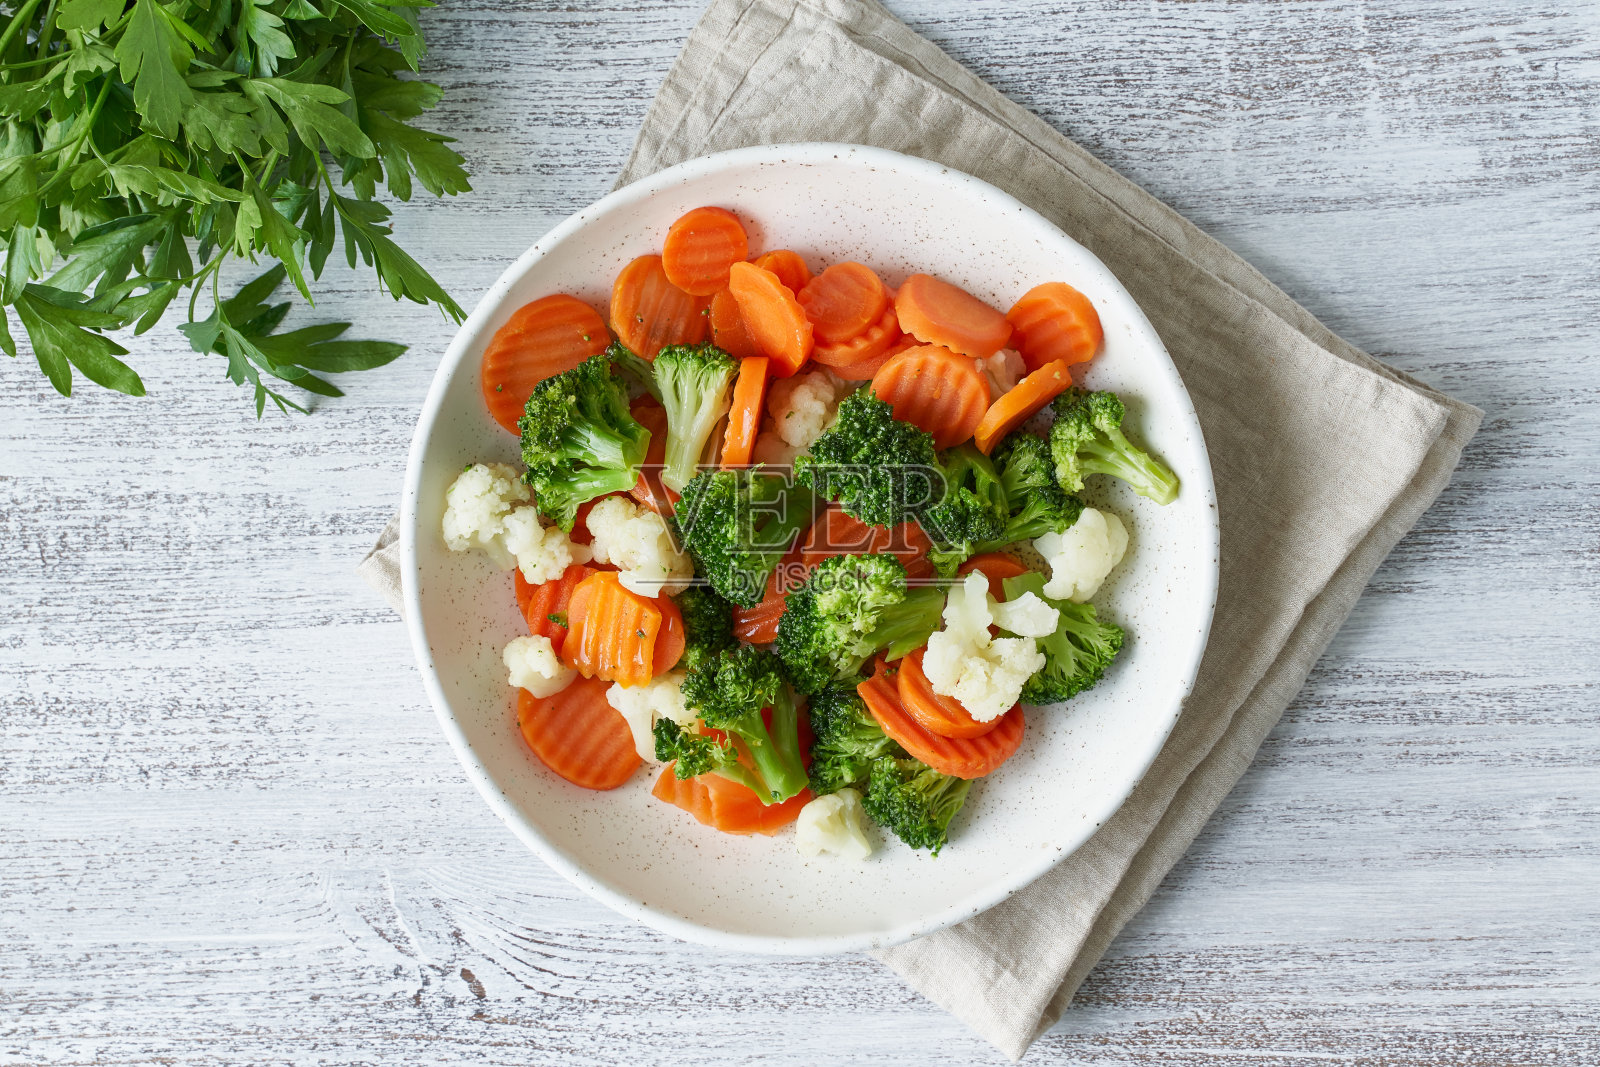 混合煮熟的蔬菜。花椰菜、胡萝卜、花椰菜。蒸熟的蔬菜照片摄影图片